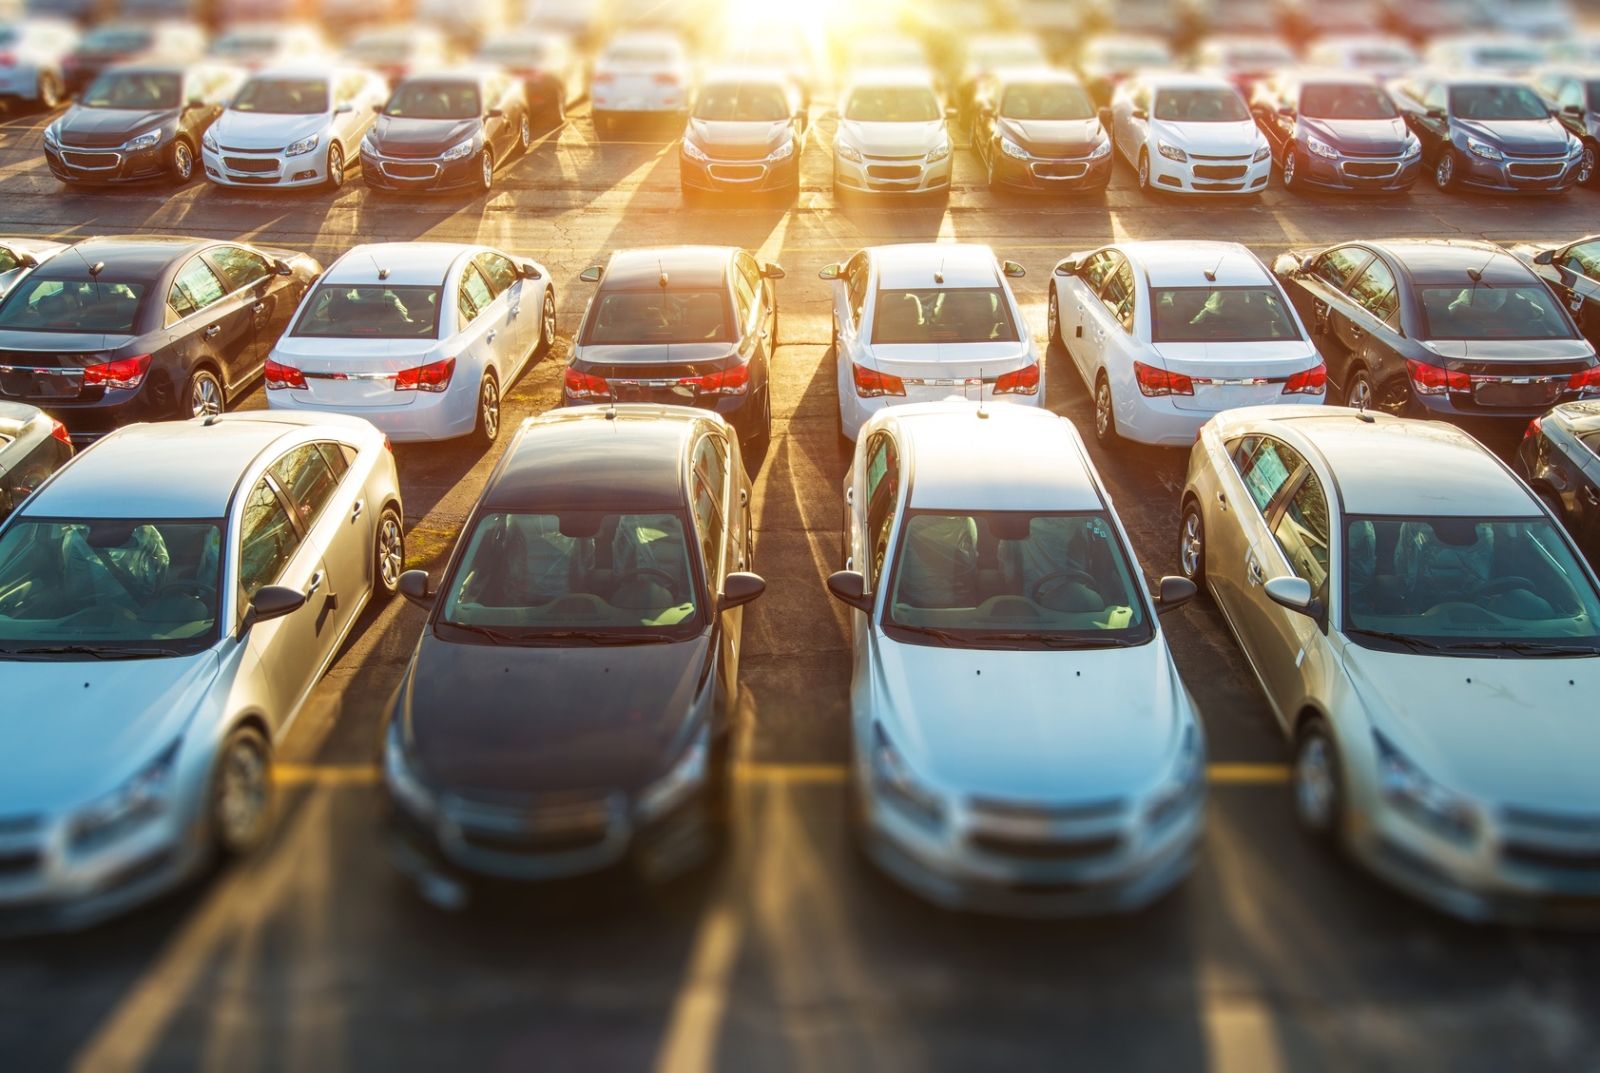 eladásra váró használt autók sorakoznak egymás mellett egy kereskedésben